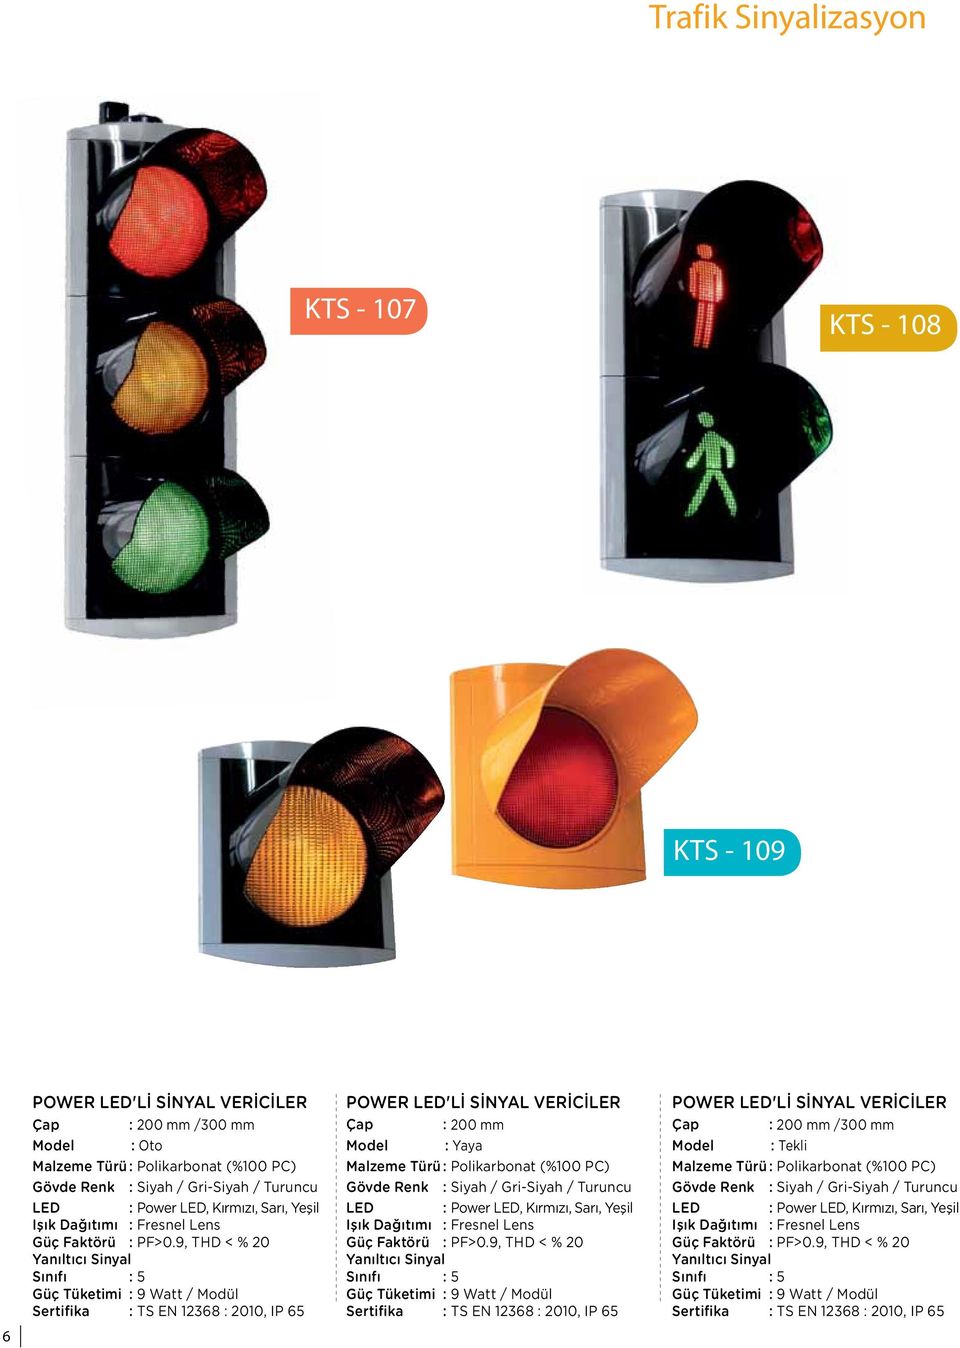 Siyah / Gri-Siyah / Turuncu Gövde Renk : Siyah / Gri-Siyah / Turuncu Gövde Renk : Siyah / Gri-Siyah / Turuncu LED : Power LED, Kırmızı, Sarı, Yeşil LED : Power LED, Kırmızı, Sarı, Yeşil LED : Power